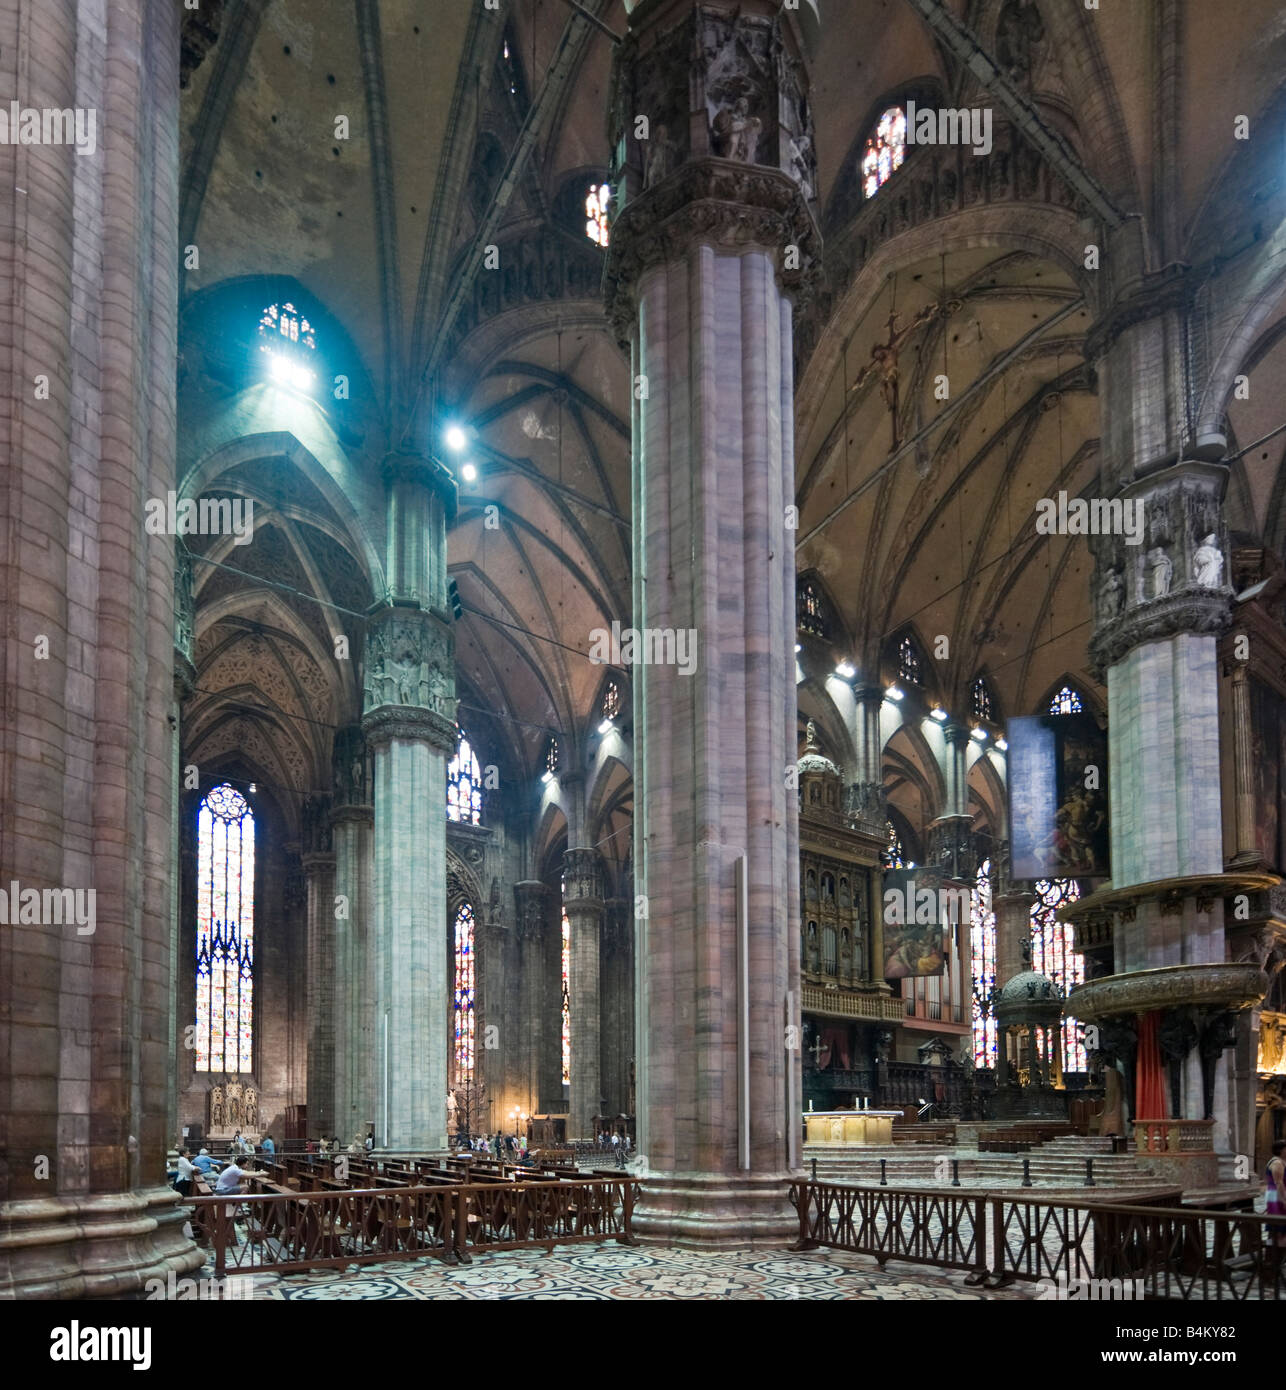 Innere des Duomo (Kathedrale), Piazza del Duomo, Mailand, Lombardei, Italien Stockfoto